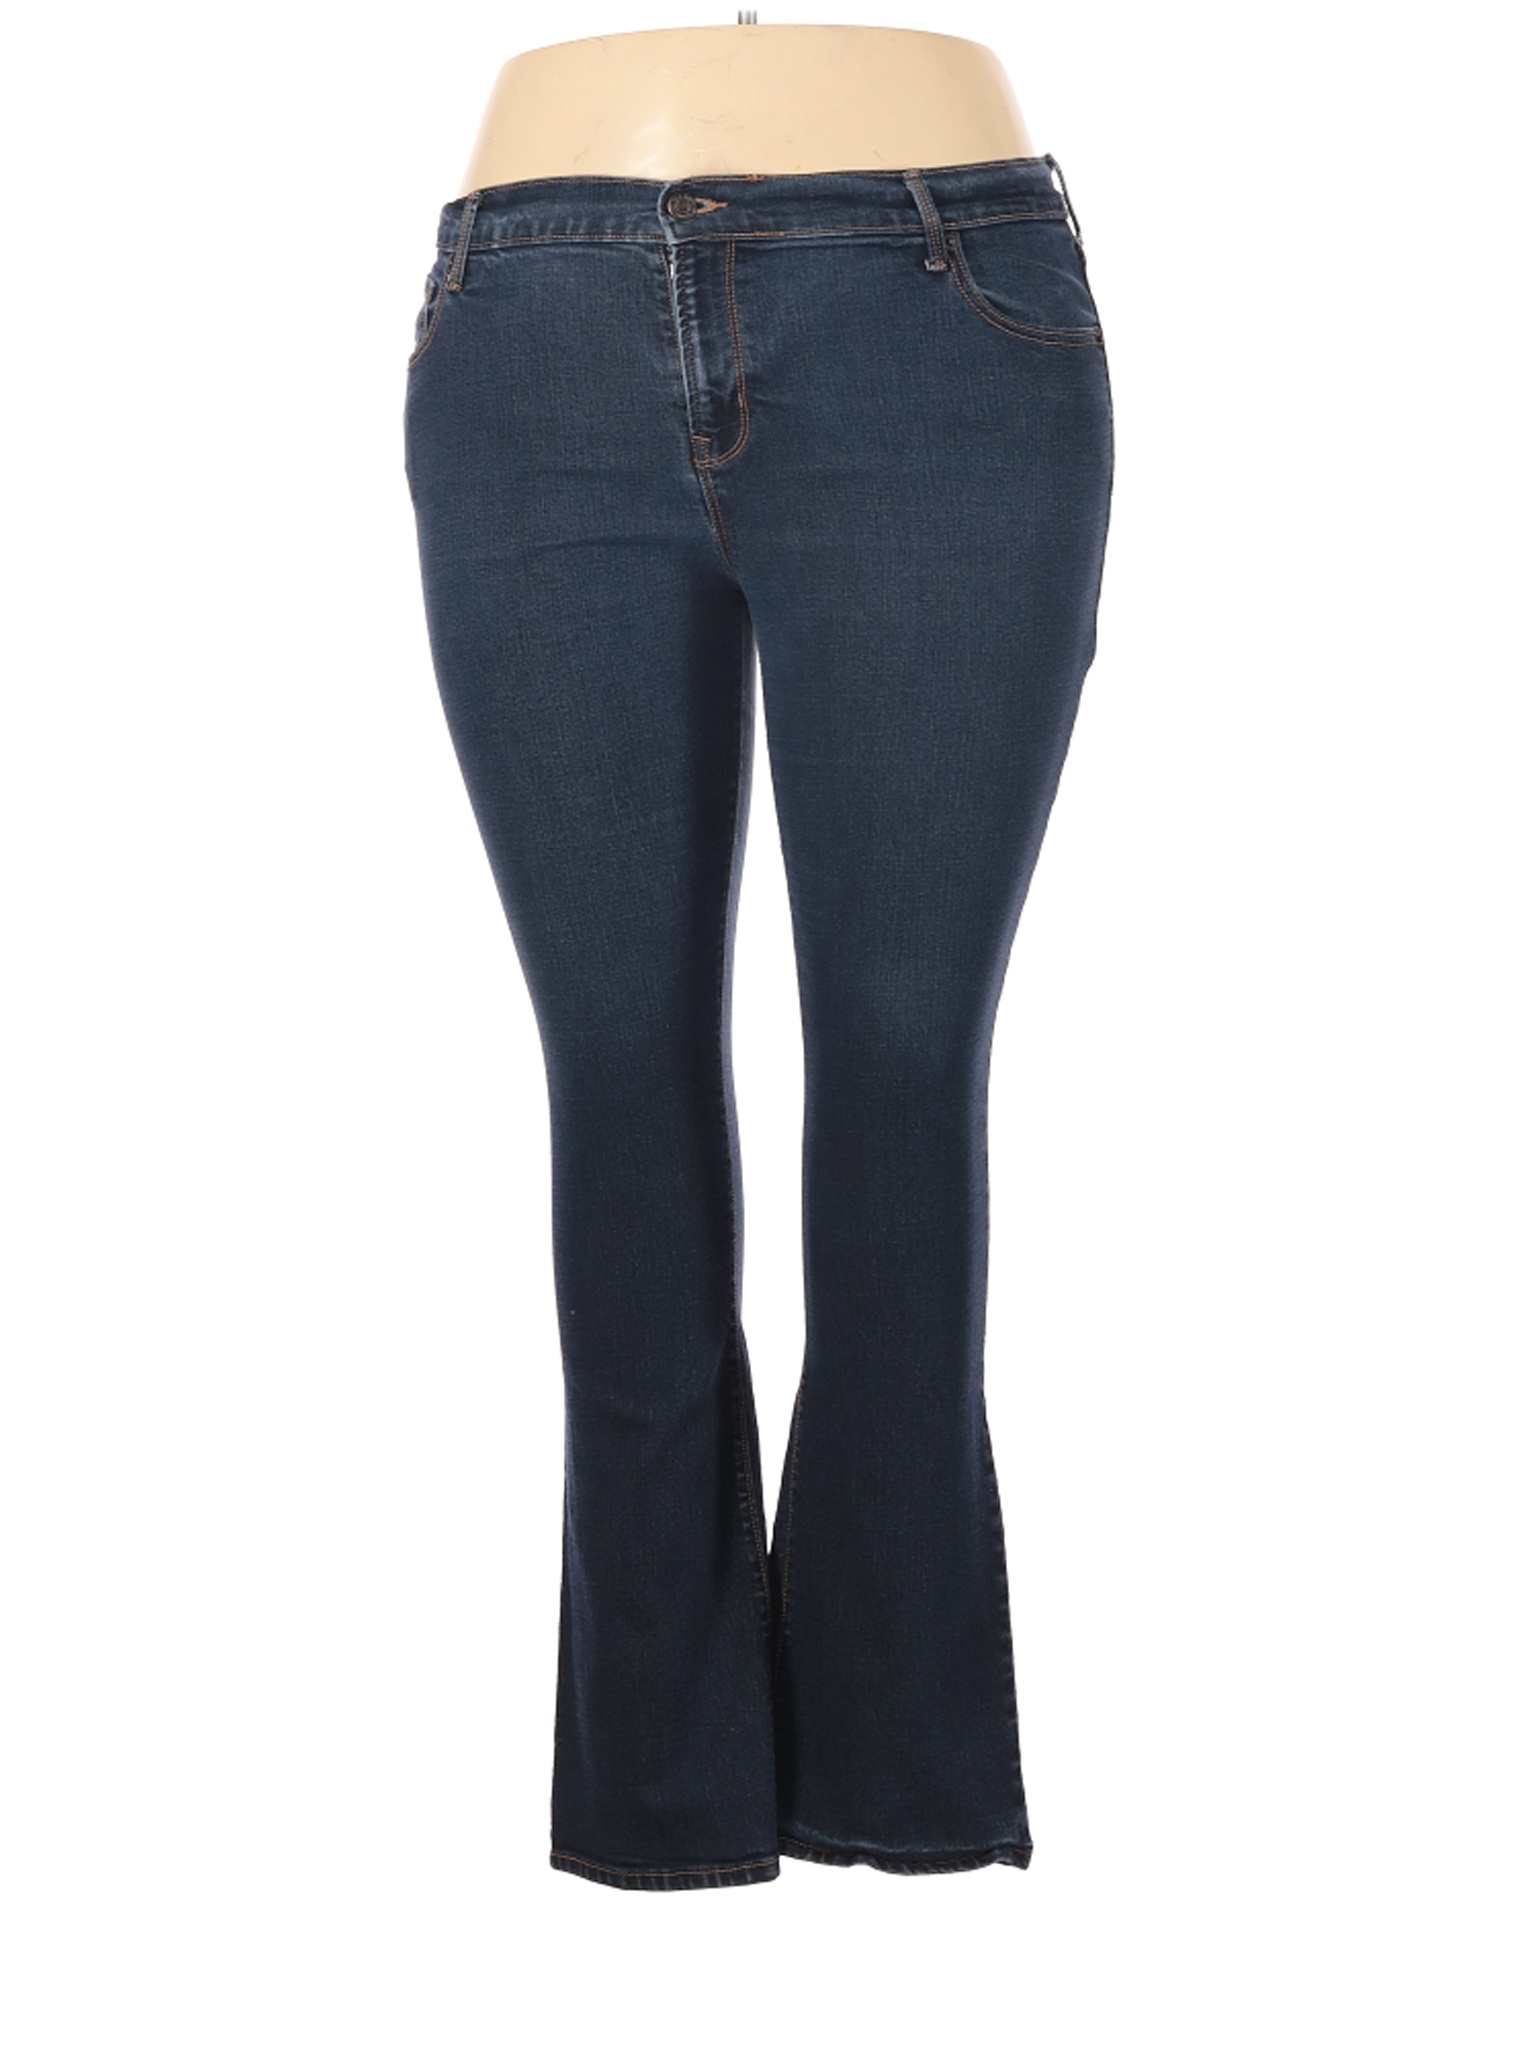 Old Navy Women Blue Jeans 18 Plus | eBay